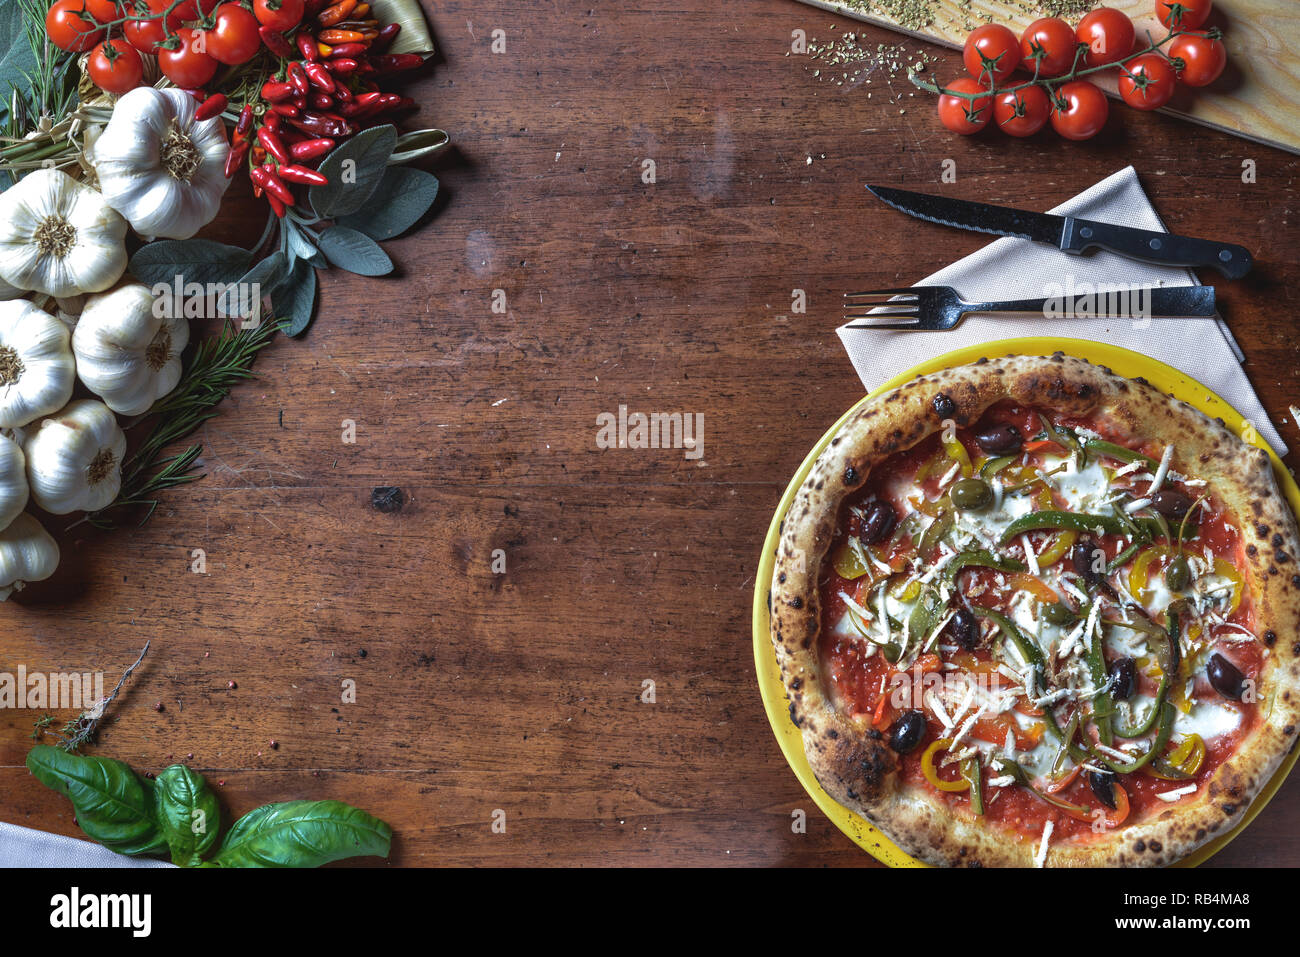 Vue de dessus le fond de la pizza napolitaine italien avec des poivrons, olives, tomates et fromage. composition du châssis avec des ingrédients d'espace libre pour le texte Banque D'Images